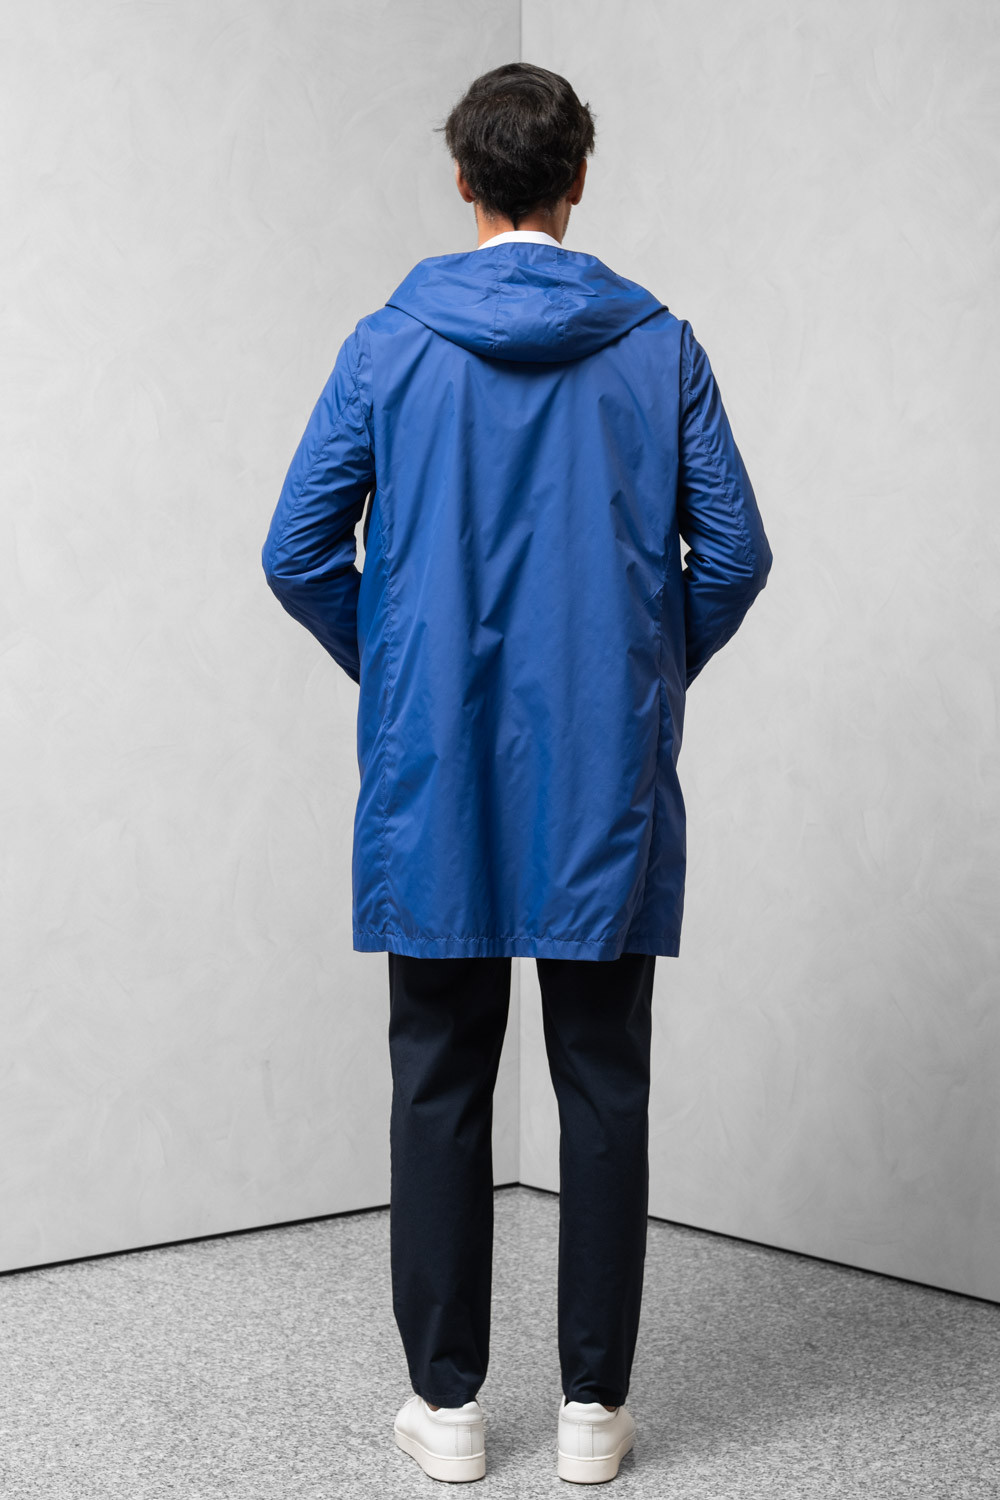 Cappotto idrorepellente uomo cappuccio tasca porta cappotto nocciola 0909 PARDO-164